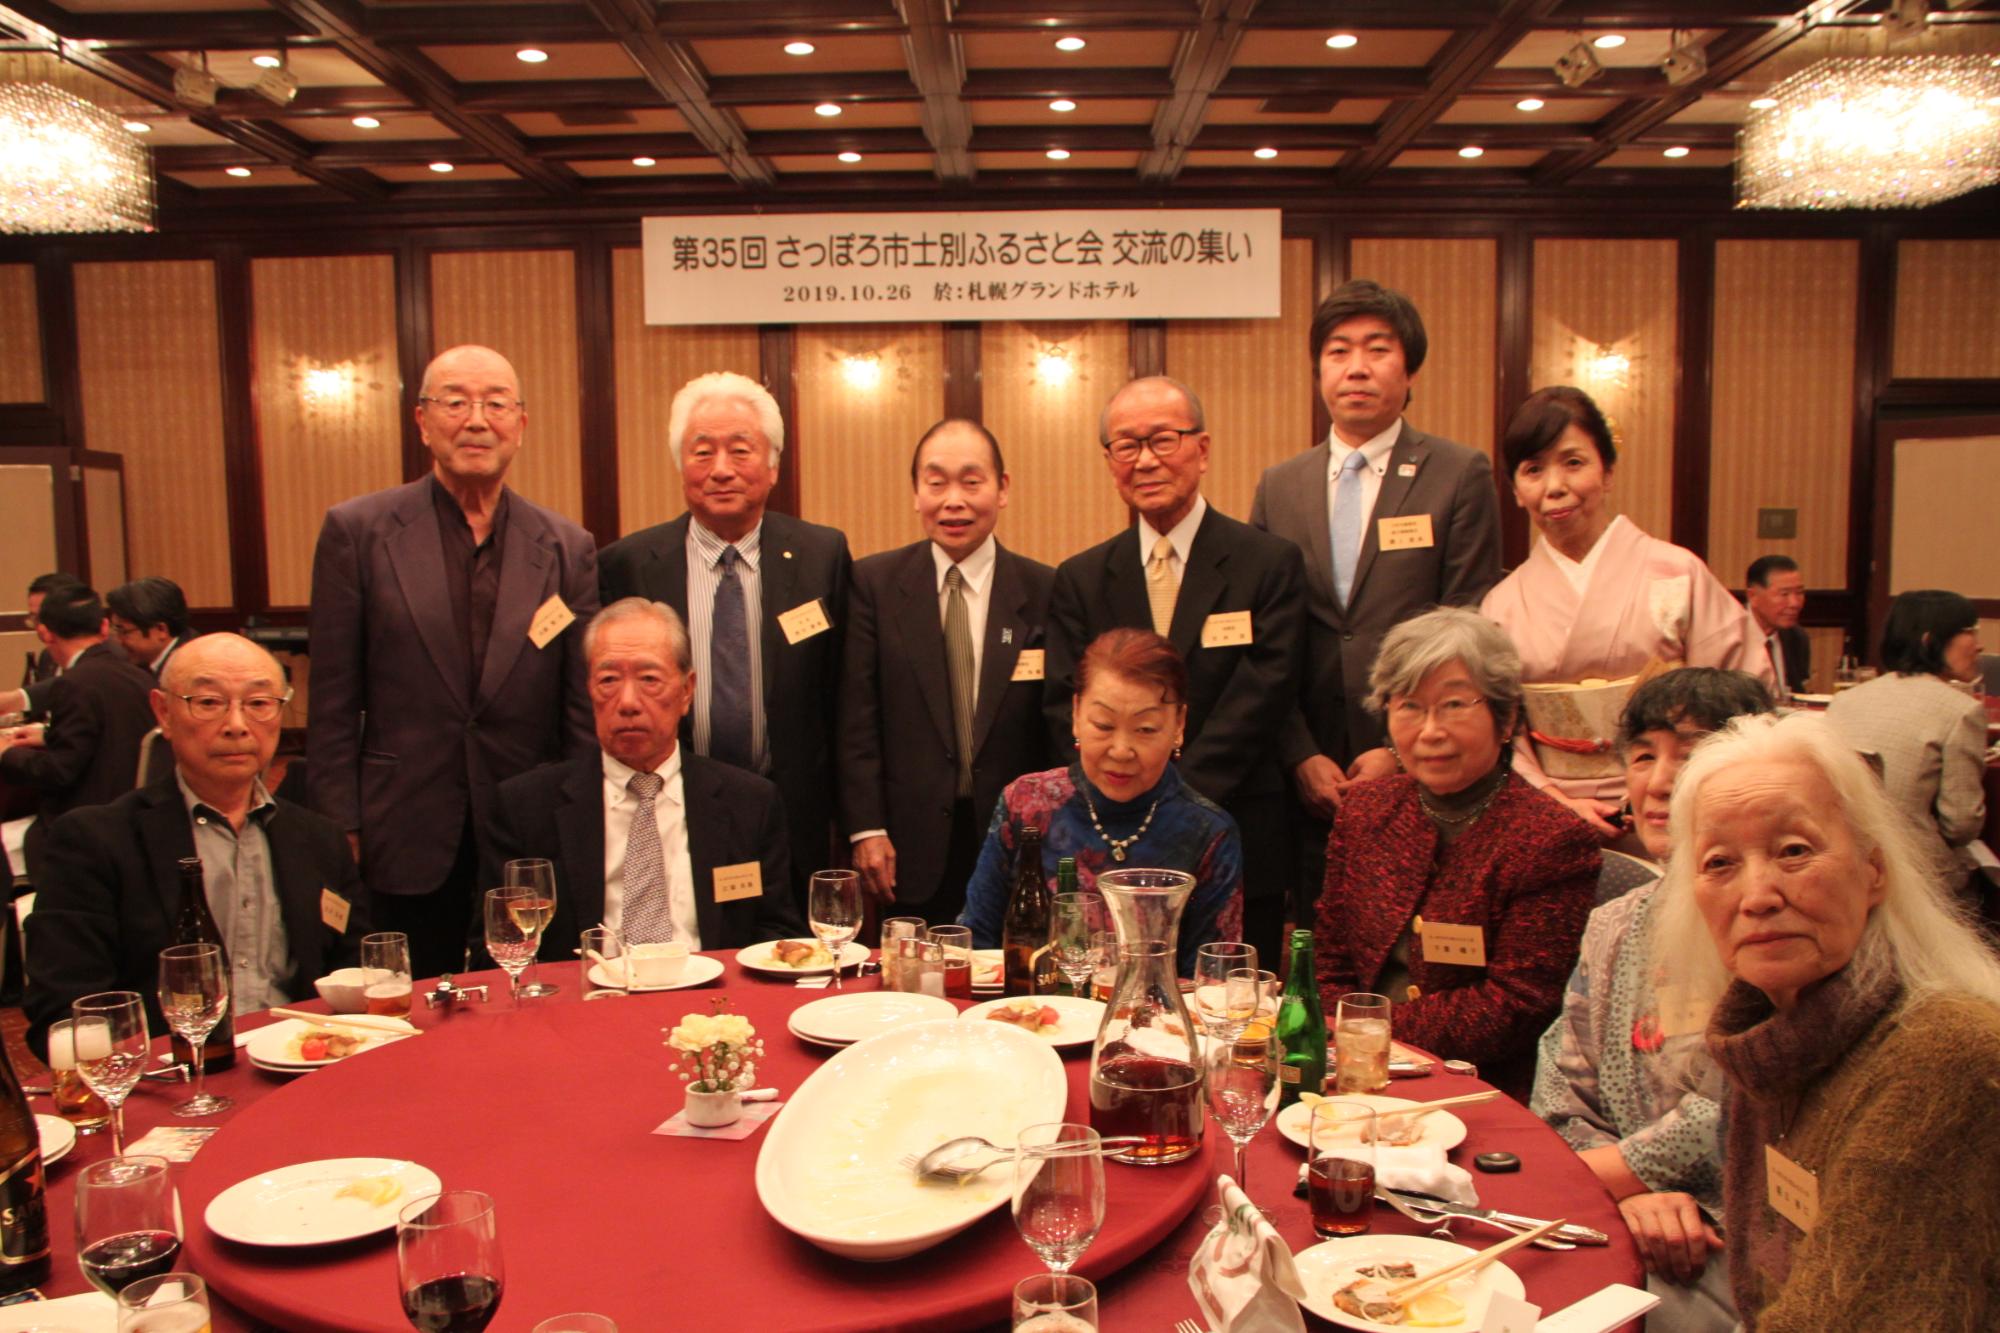 赤いテーブルクロスの丸いテーブルに料理や飲み物が並び、テーブルを囲んで右端にピンクの着物姿の女性が並び、男性7名女性5名、総勢12名の方が記念撮影をしている写真